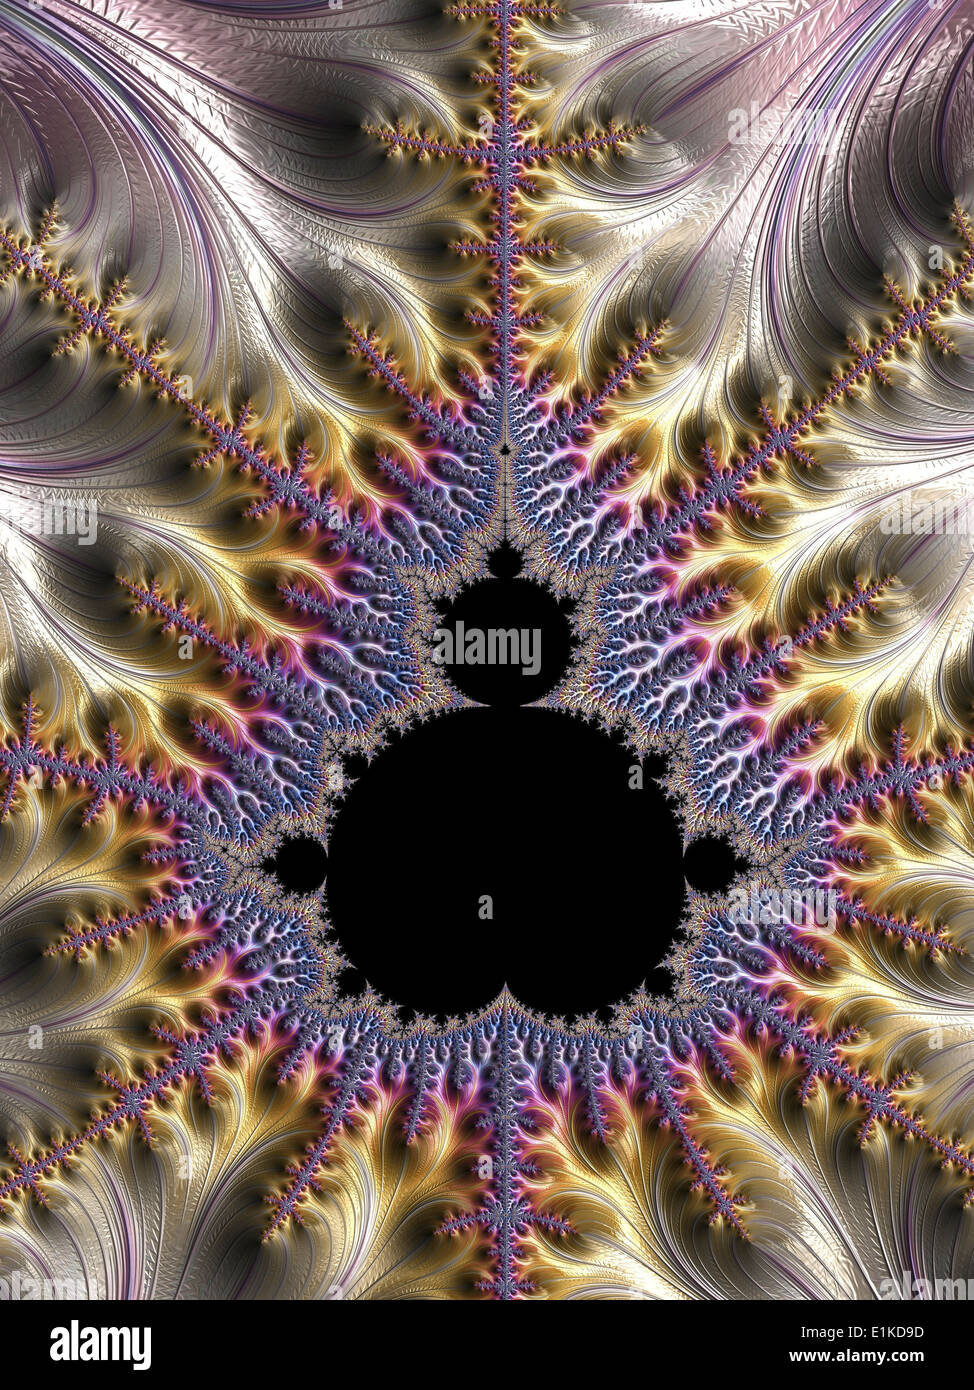 Fractal de Mandelbrot computación gráfica mostrando una imagen fractal derivado del conjunto de Mandelbrot fractales geometría se utilizan para derivar Foto de stock